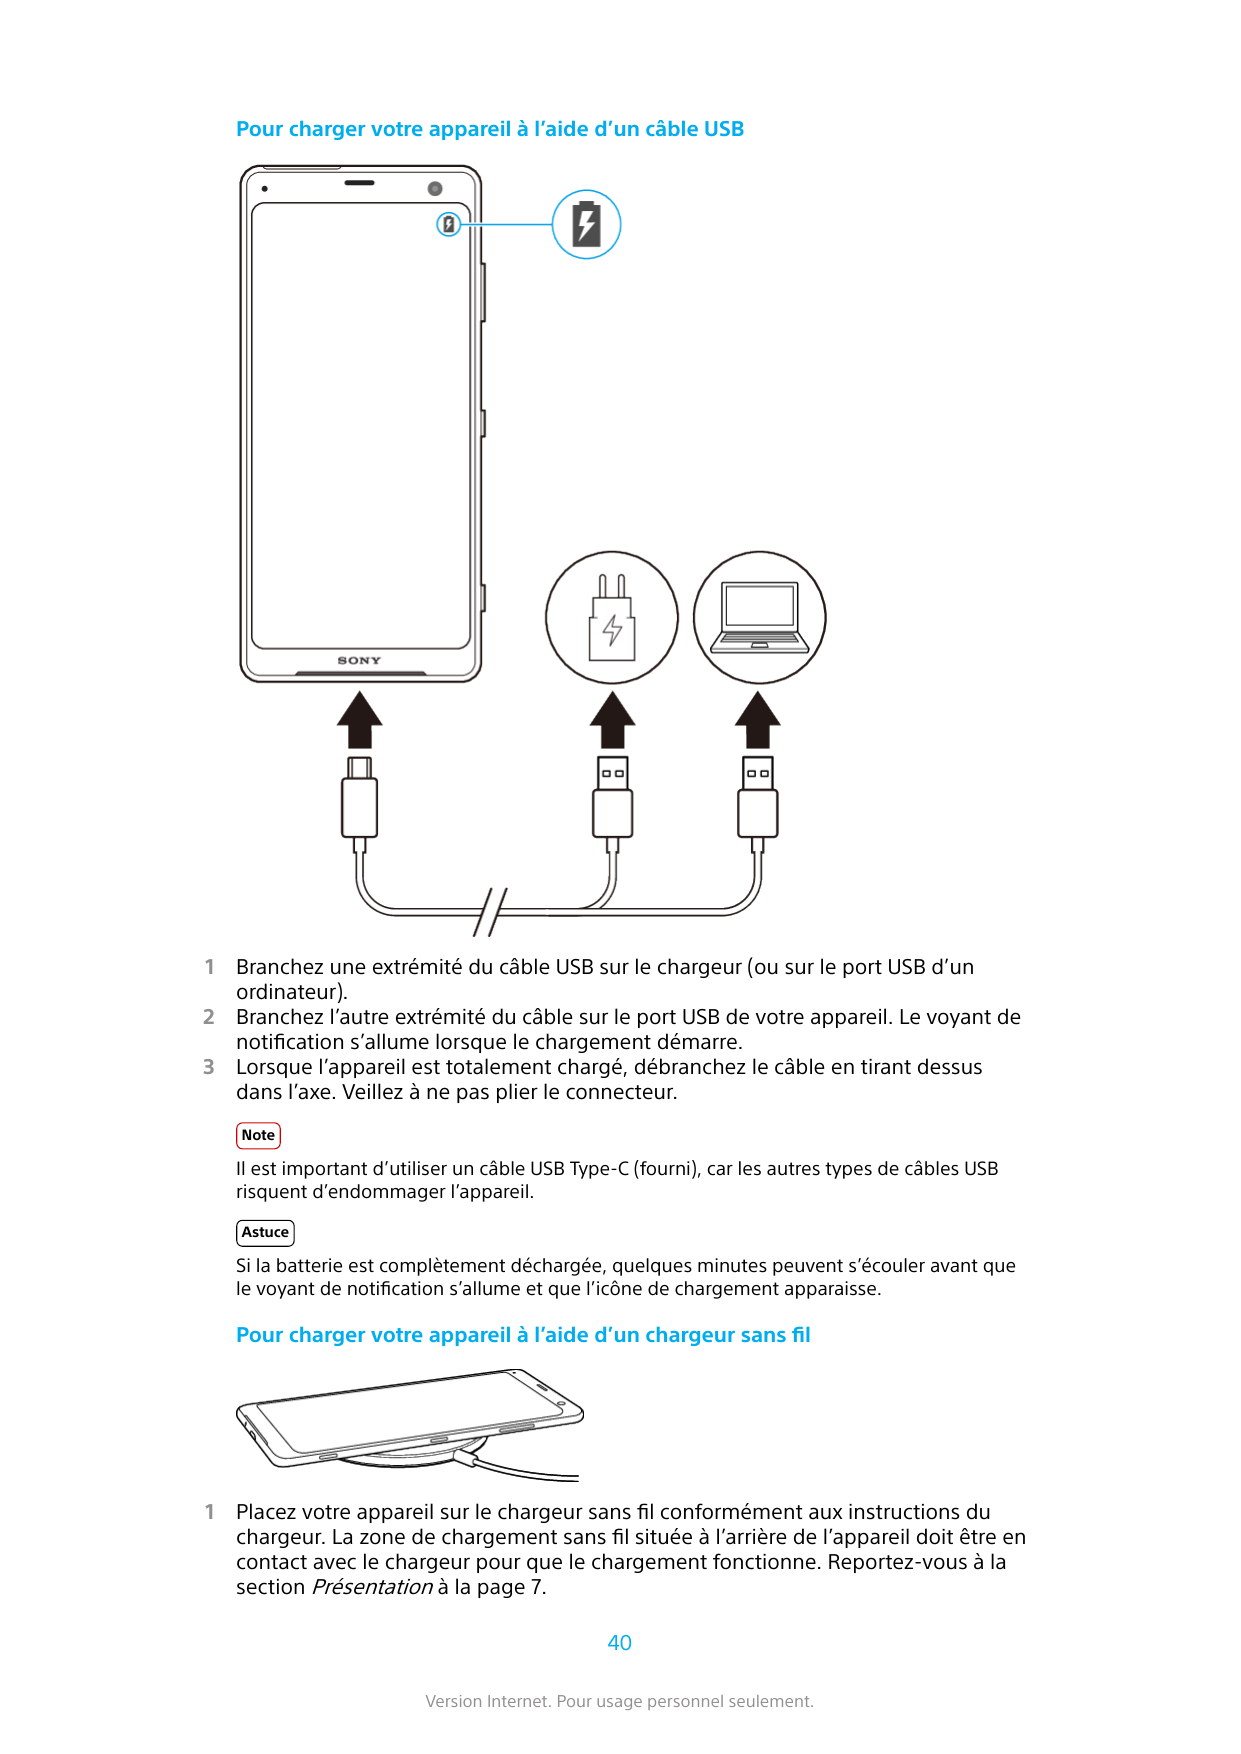 Pour charger votre appareil à l’aide d’un câble USB123Branchez une extrémité du câble USB sur le chargeur (ou sur le port USB d’